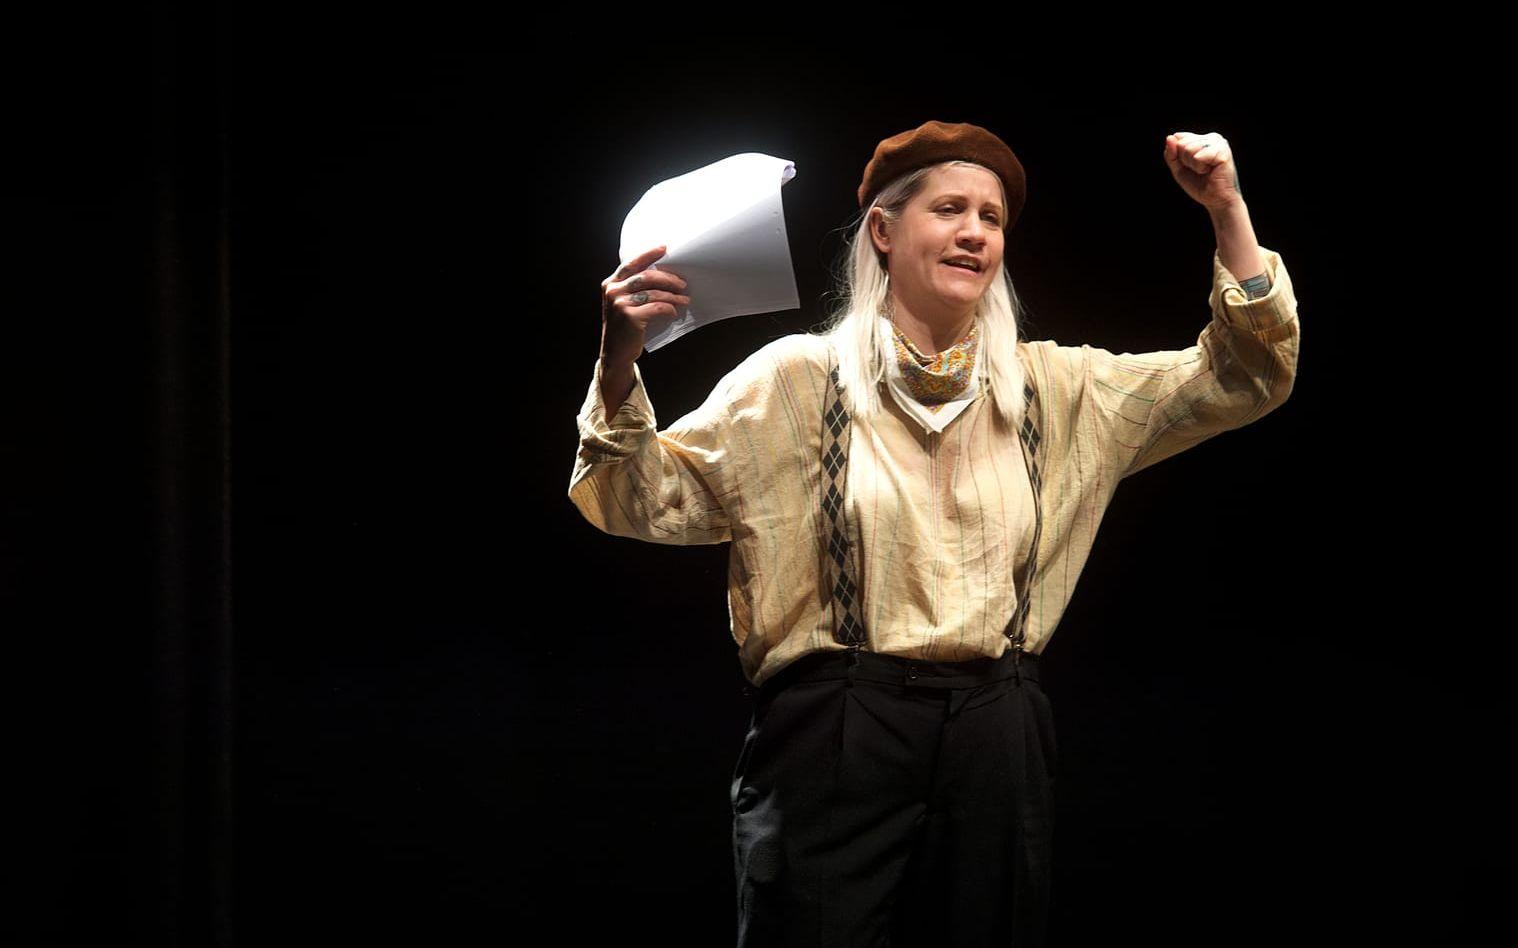 Komikern Emma Knyckare är bland annat känd för en kvinnofestival. I ”Isskåpet” spelar hon bohemen Stefan. Bild: Lina Salomonsson